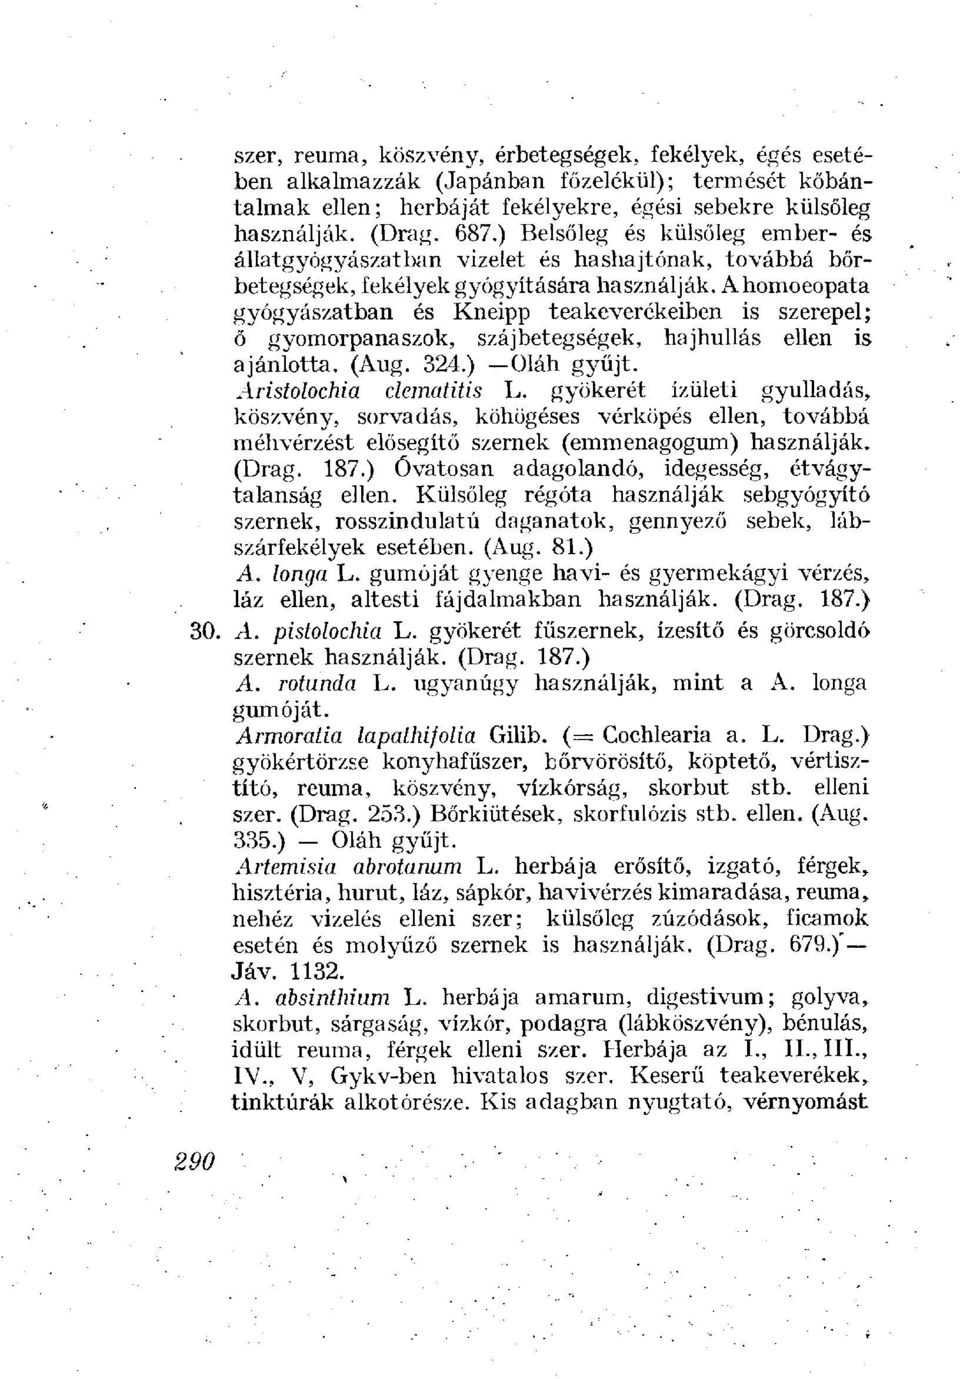 Ahomoeopata gyógyászatban és Kneipp teakeverékeiben is szerepel; ő gyomorpanaszok, szájbetegségek, hajhullás ellen is ajánlotta. (Aug. 324.) Oláh gyűjt. Aristolochia clematitis L.